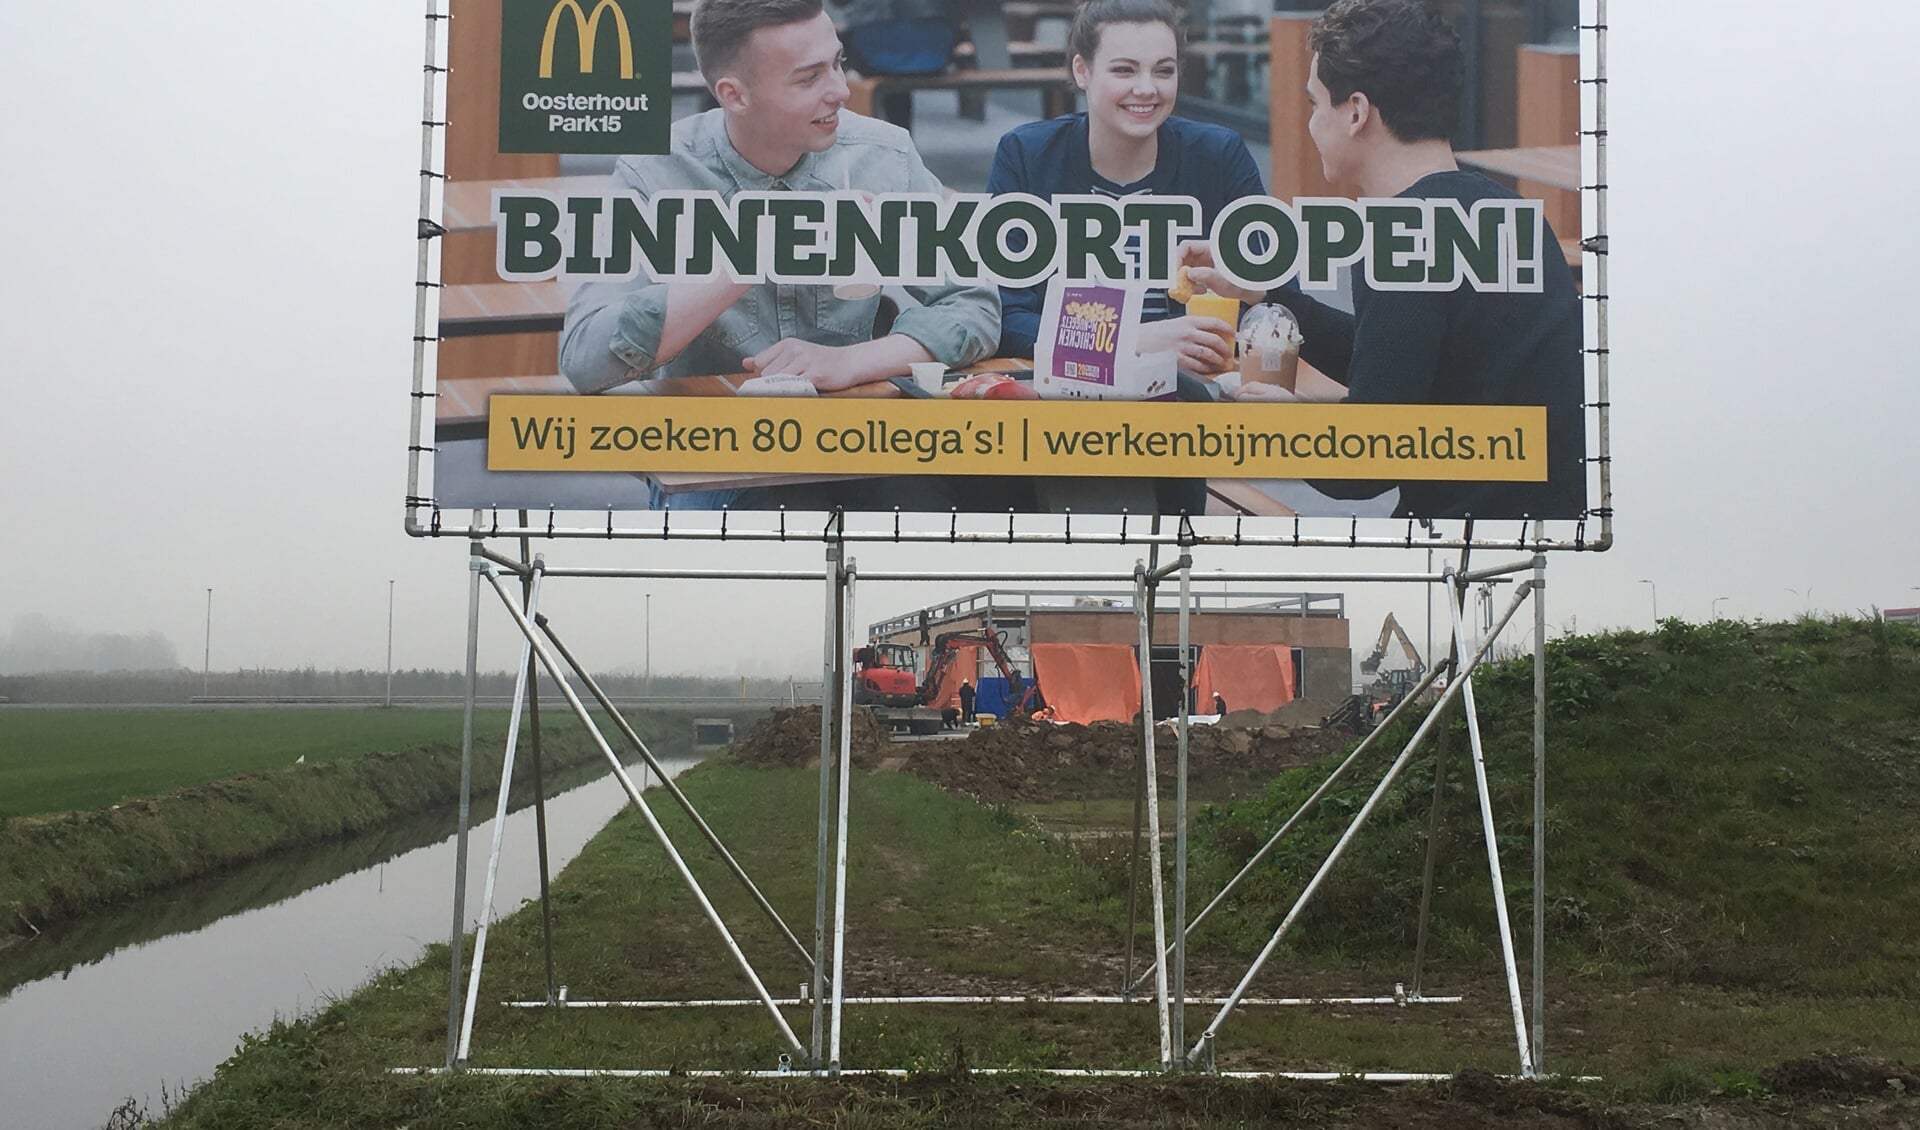 Gisteren geplaatst langs de A15/ voor het restaurant in aanbouw:
McDonald’s gaat binnenkort open en zoekt 80 collega’s!